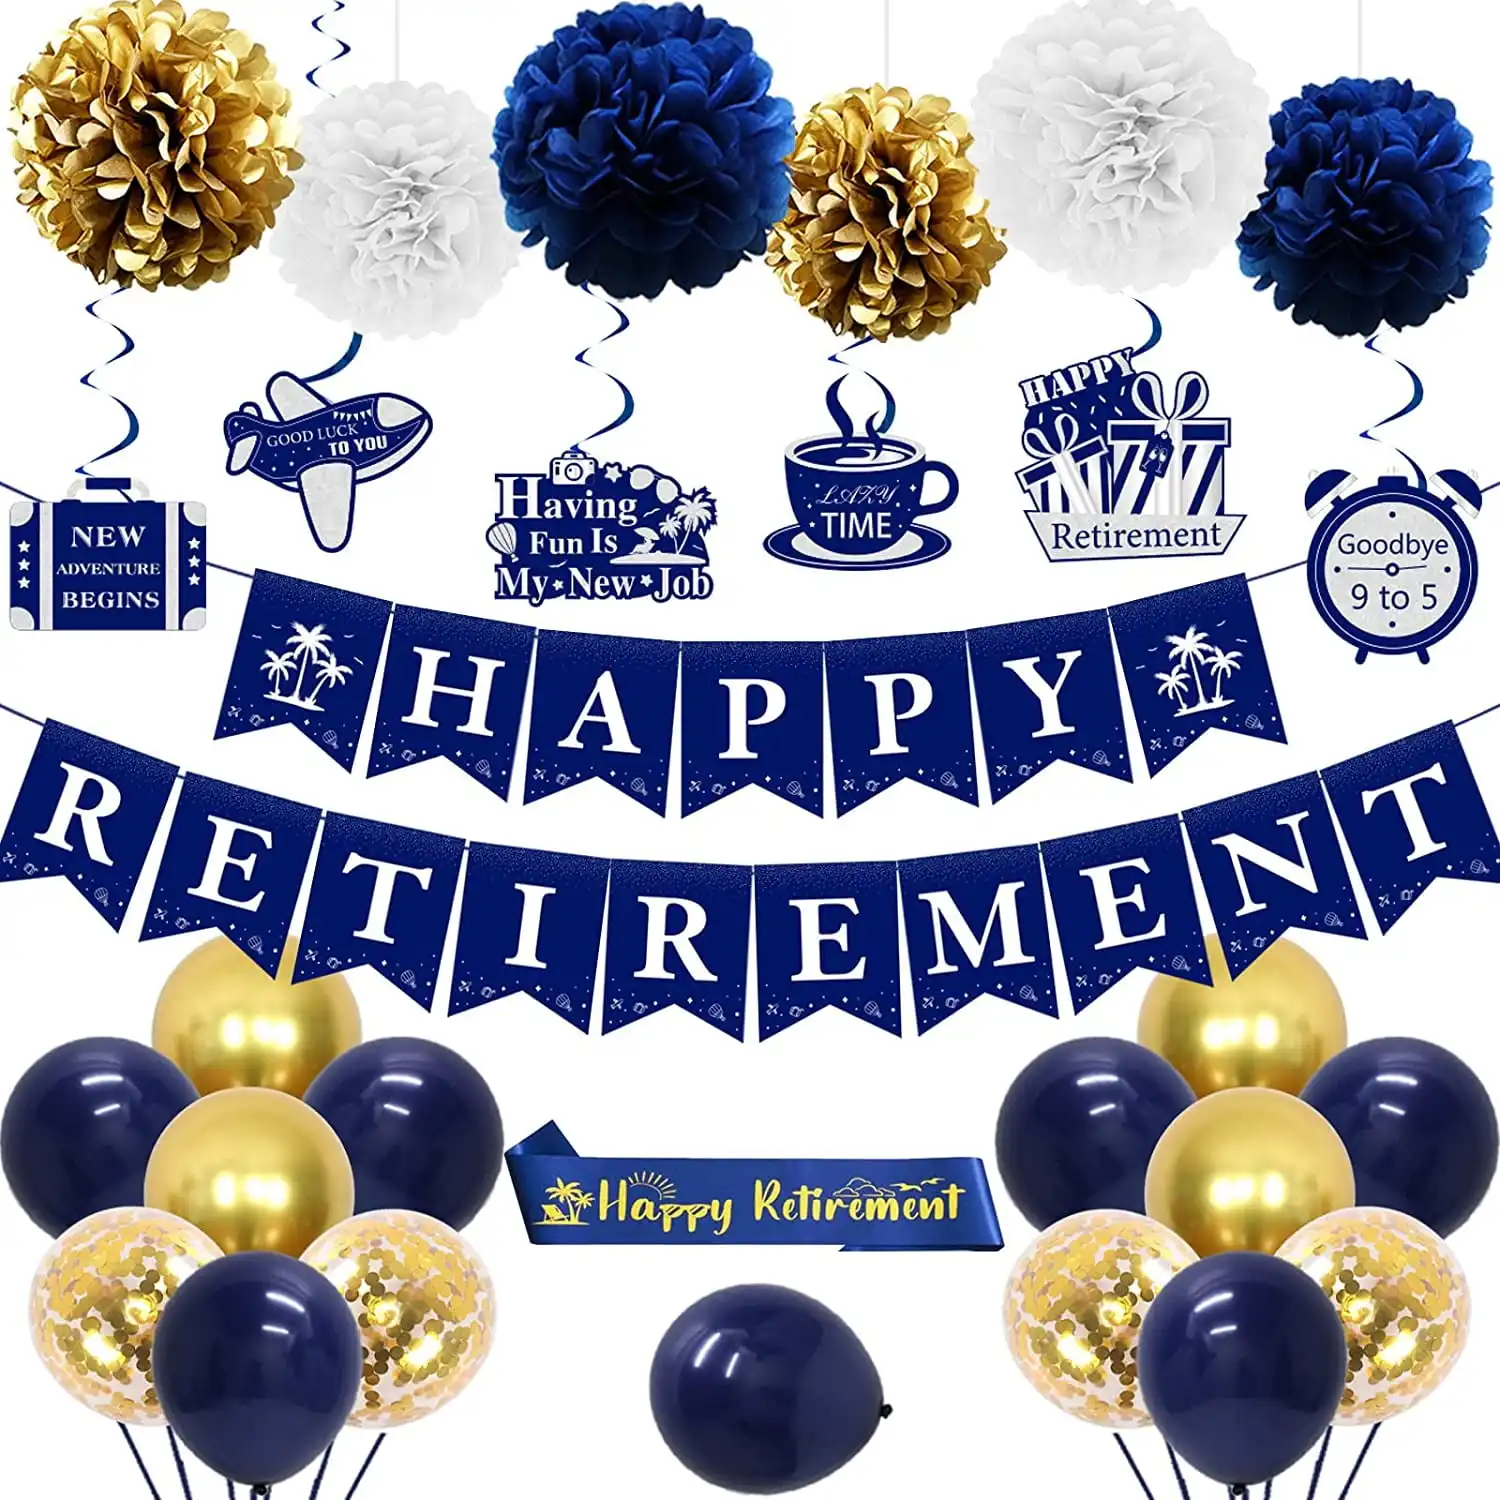 Happy Retirement Partyแบนเนอร์บอลลูนกระดาษPompomsแขวนSwirlsจี้สีฟ้าทองเกษียณอายุตกแต่งอุปกรณ์ชุด